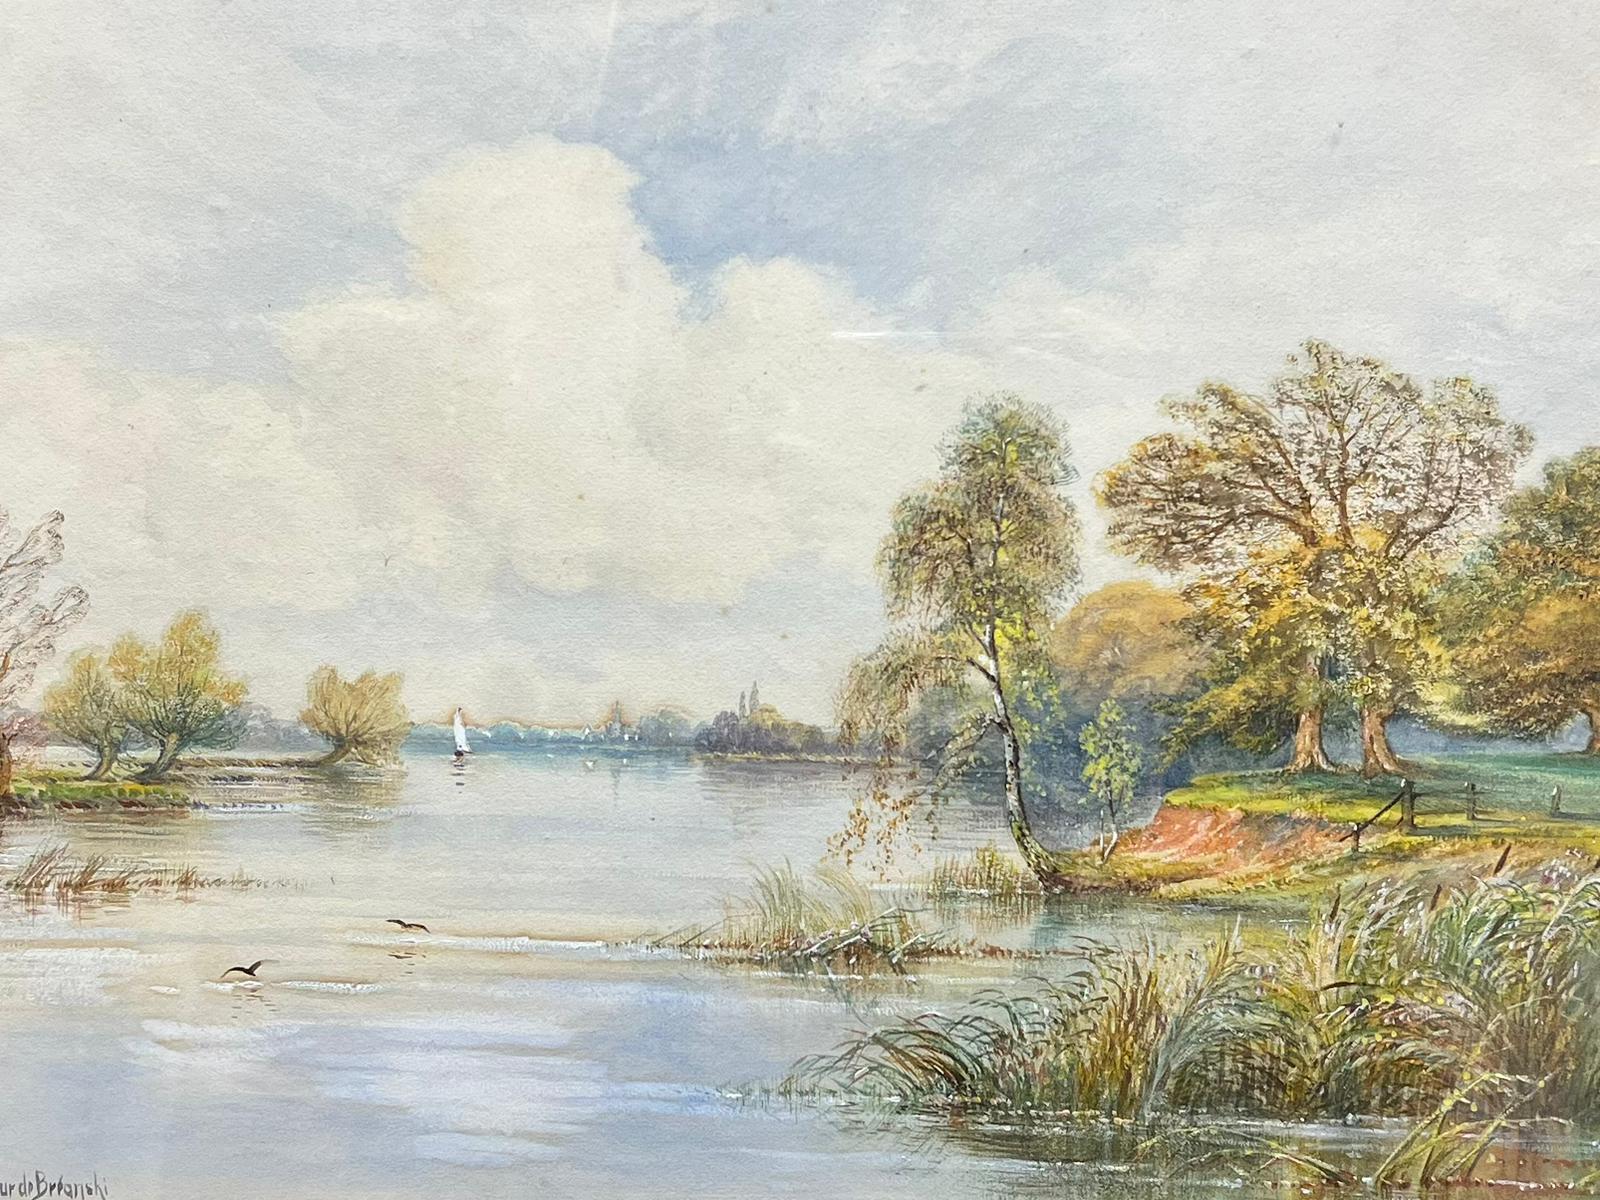 Arthur de Breanski Landscape Painting - A Sunny Day On The Thames River Landscape, Antique British Painting